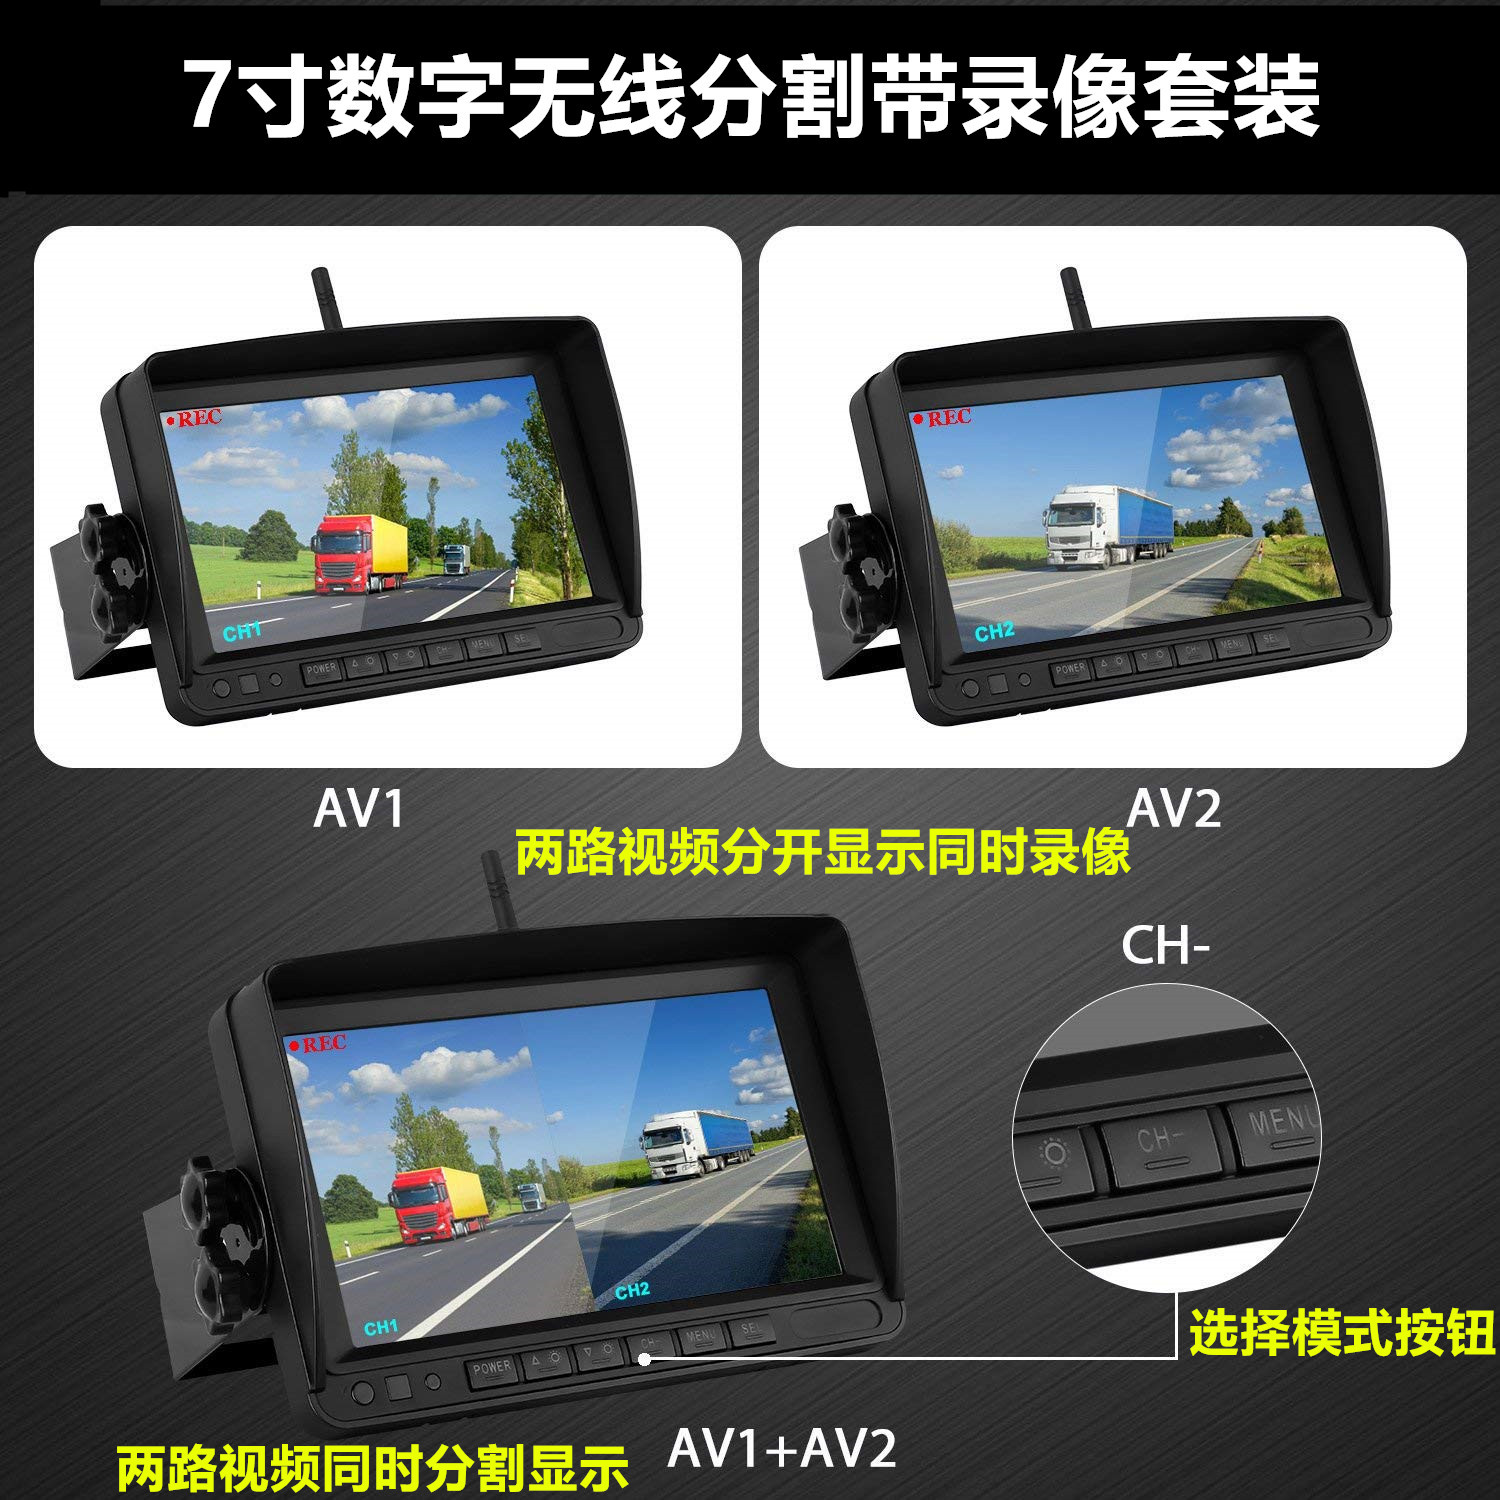 7寸AHD数字无线显示器,同显两画面,配AHD摄像头,抗干扰,传输稳定